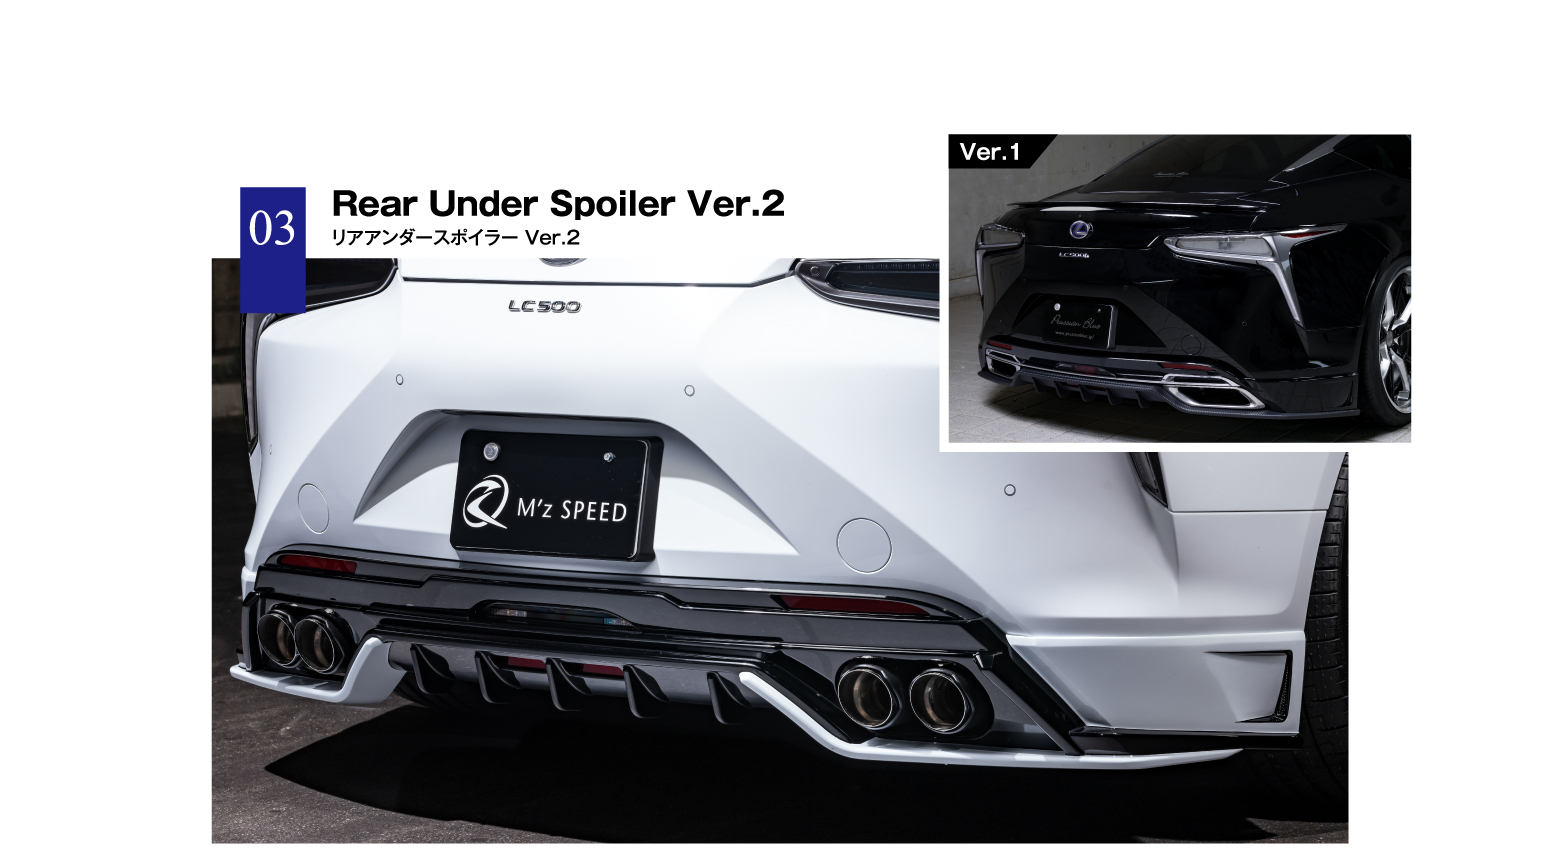 03 Rear Under Spoiler Ver.2 リアアンダースポイラー Ver.2